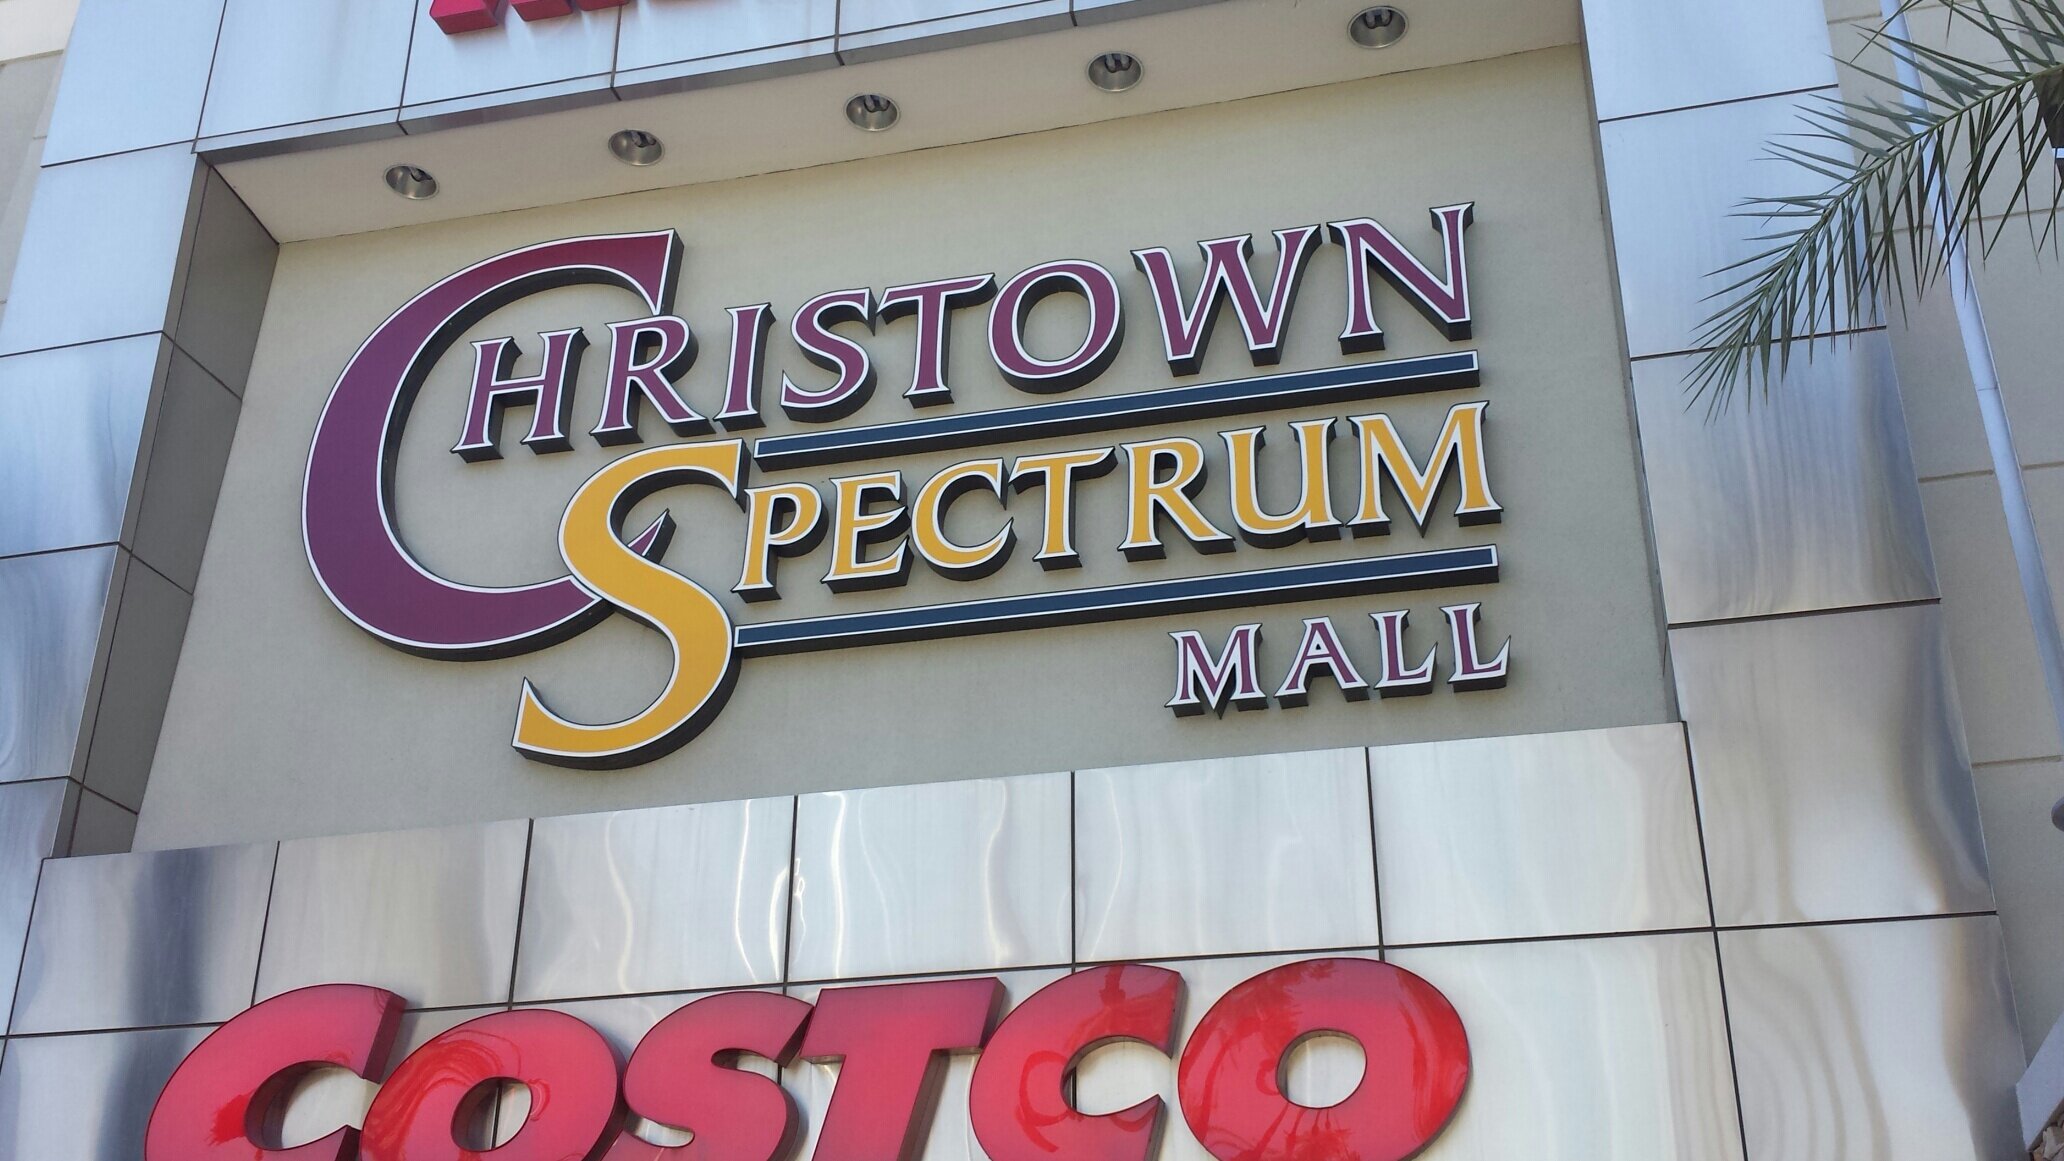 Christown Spectrum